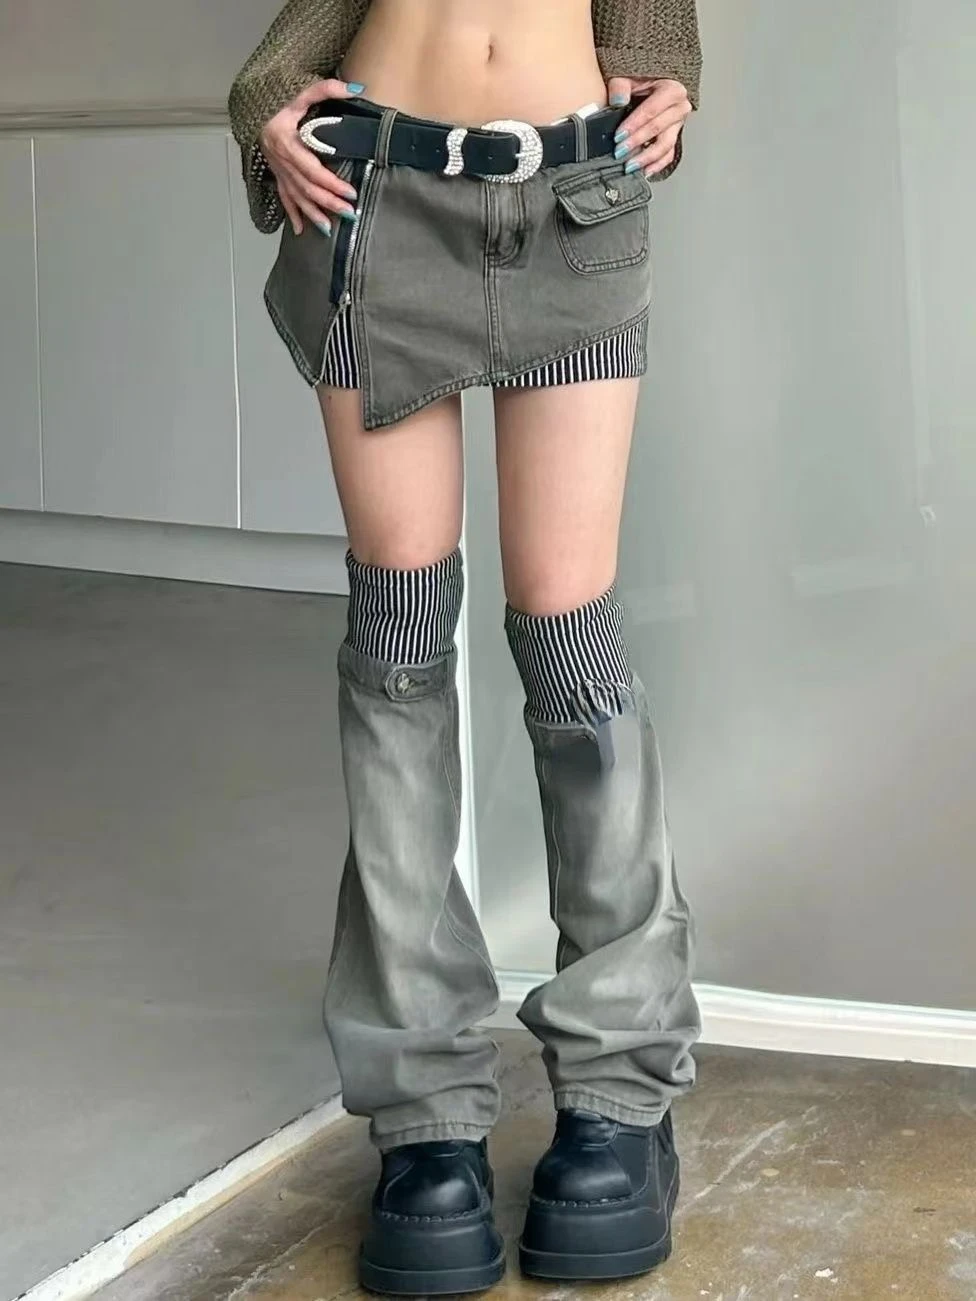 

New Design Fashion Patchwork Striped Skirt Women Denim Short Skirt Bottoms High Waist Sexy Korean Grey Hiphop Punk Streetwear